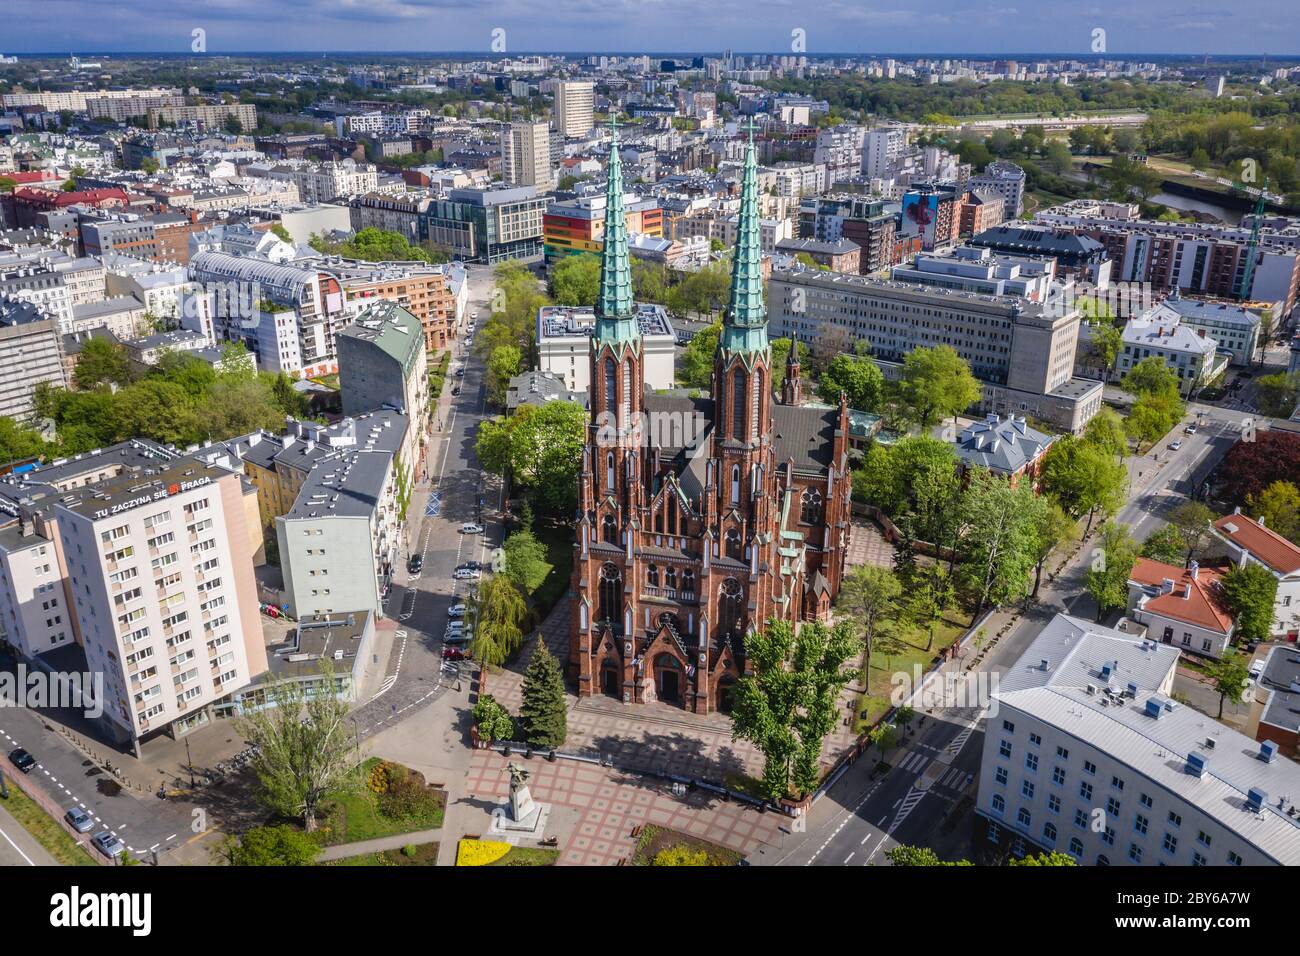 Vue aérienne dans le quartier de Praga Polnoc de Varsovie, Pologne avec la cathédrale Saint Michel l'Archange et St Florian le Martyr Banque D'Images